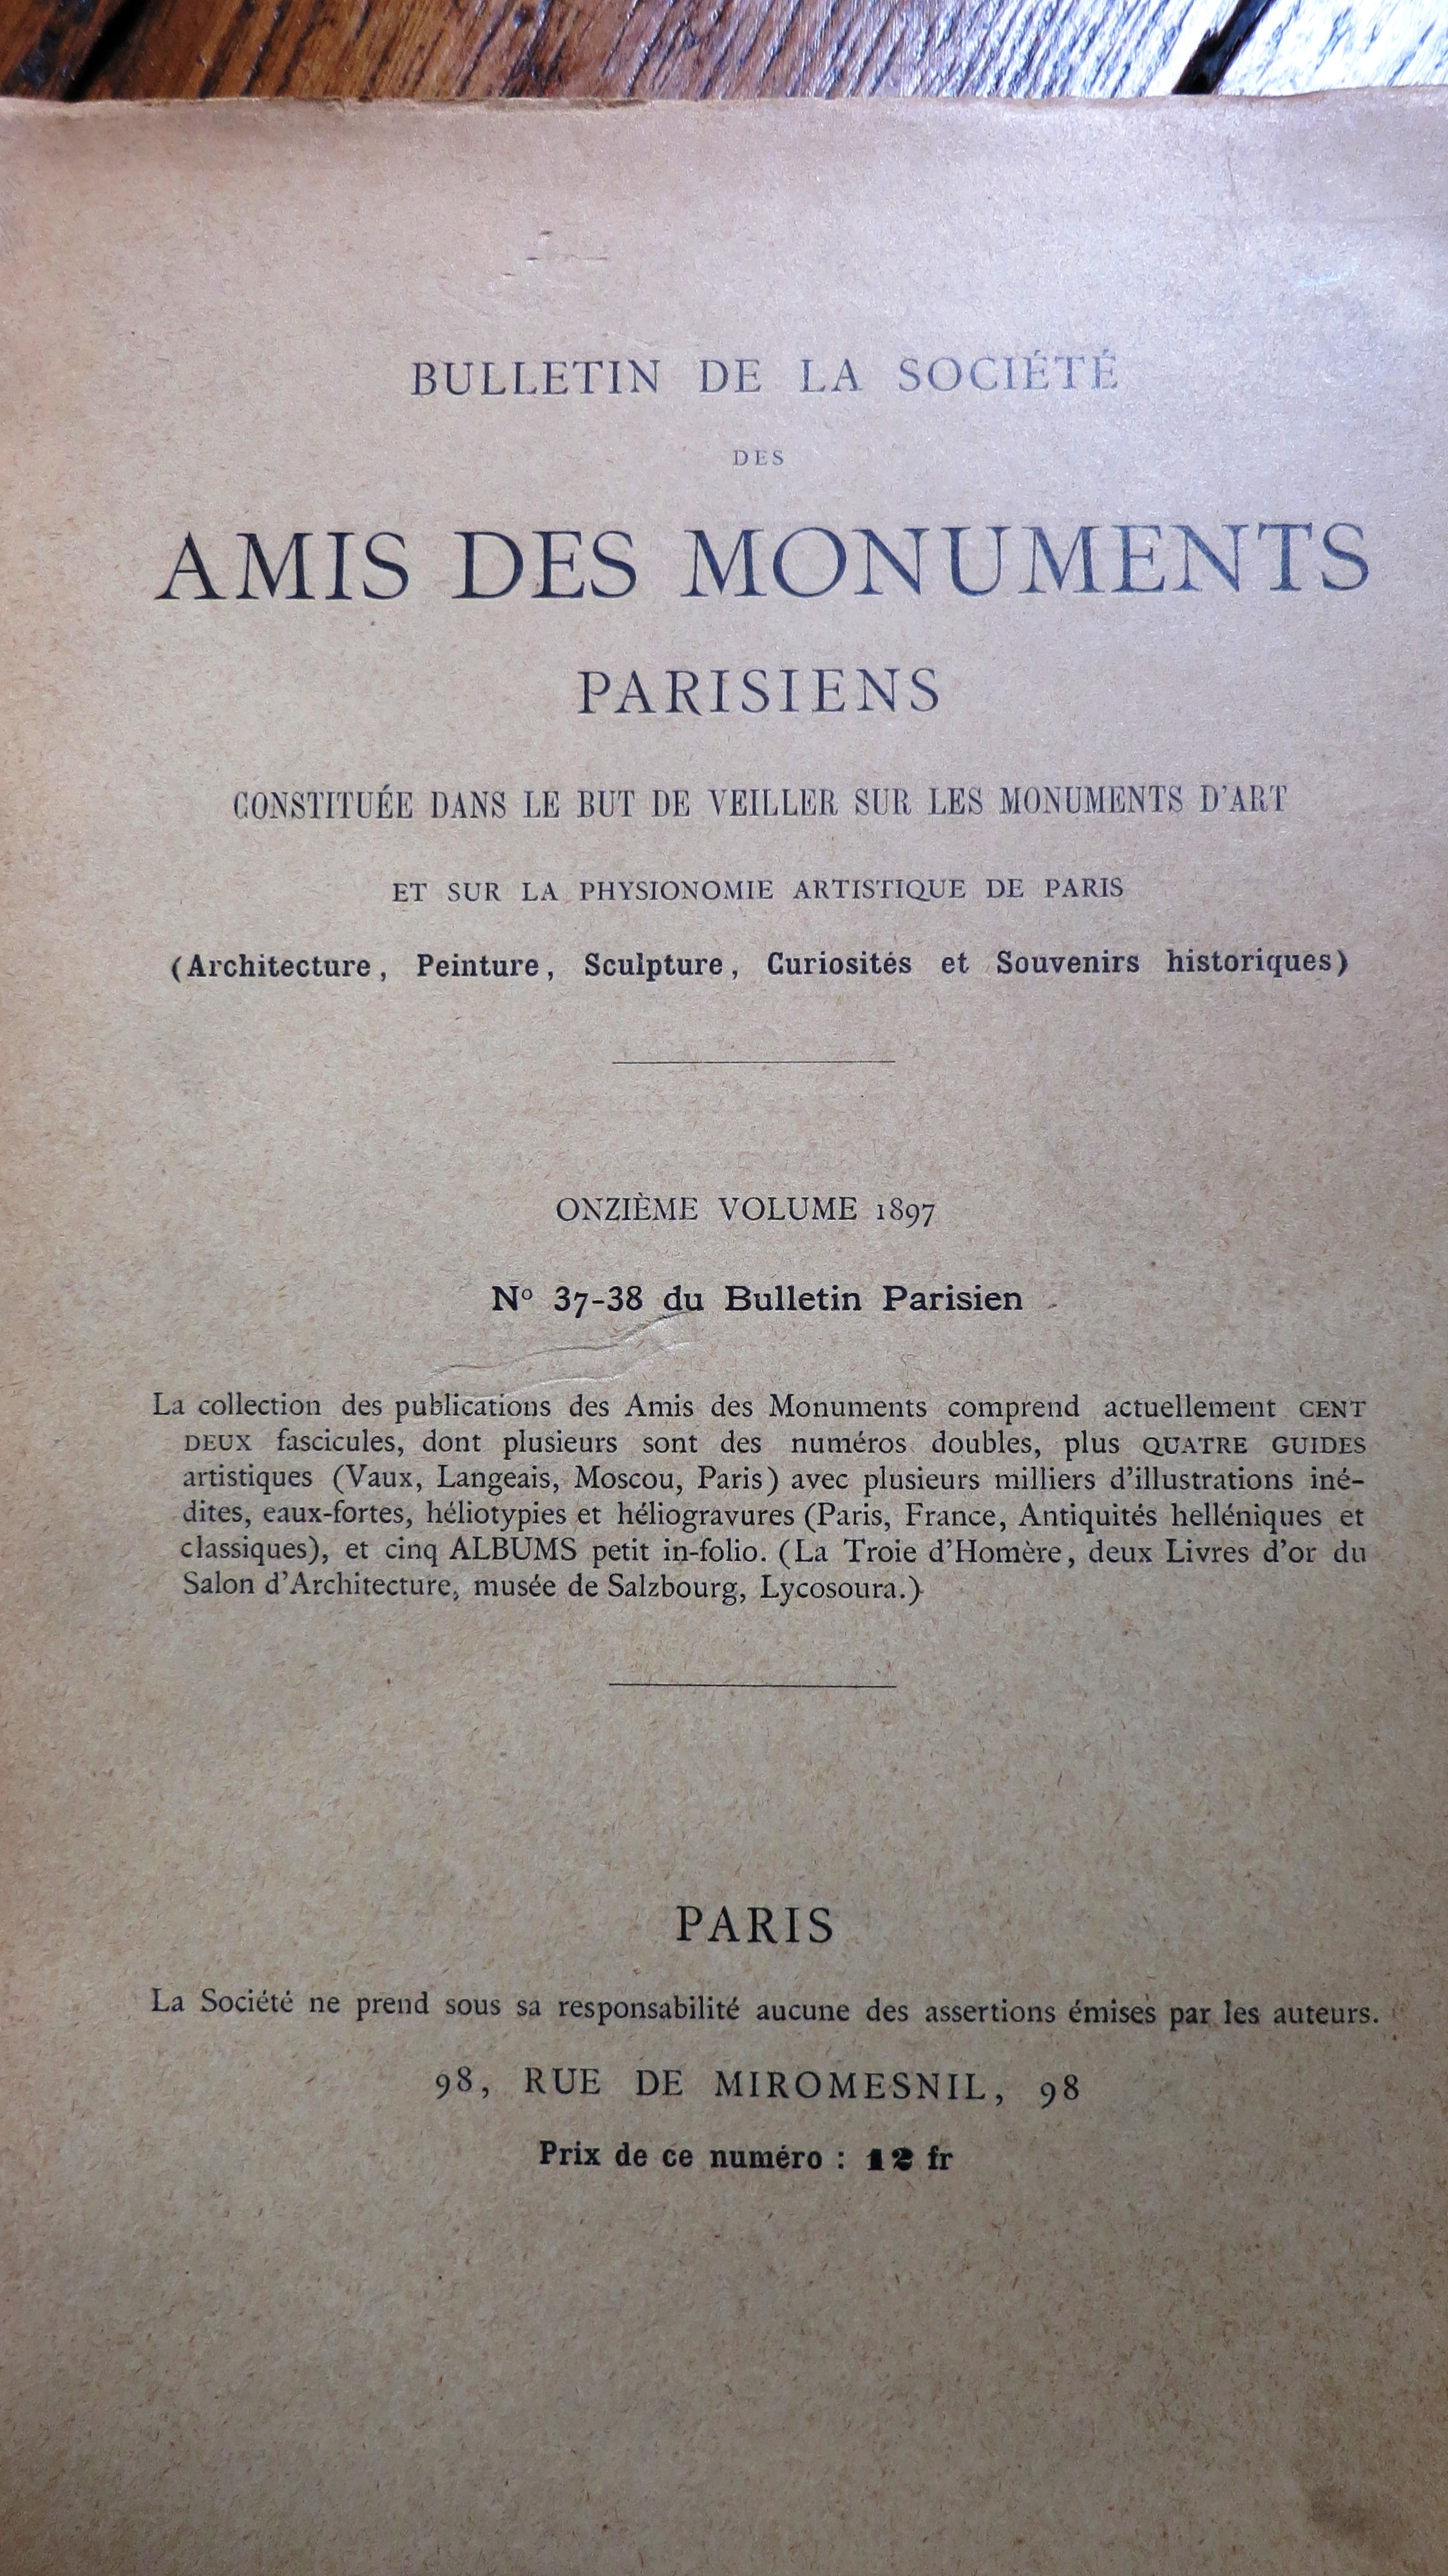 Bulletin de la Société des Amis des Monuments parisiens